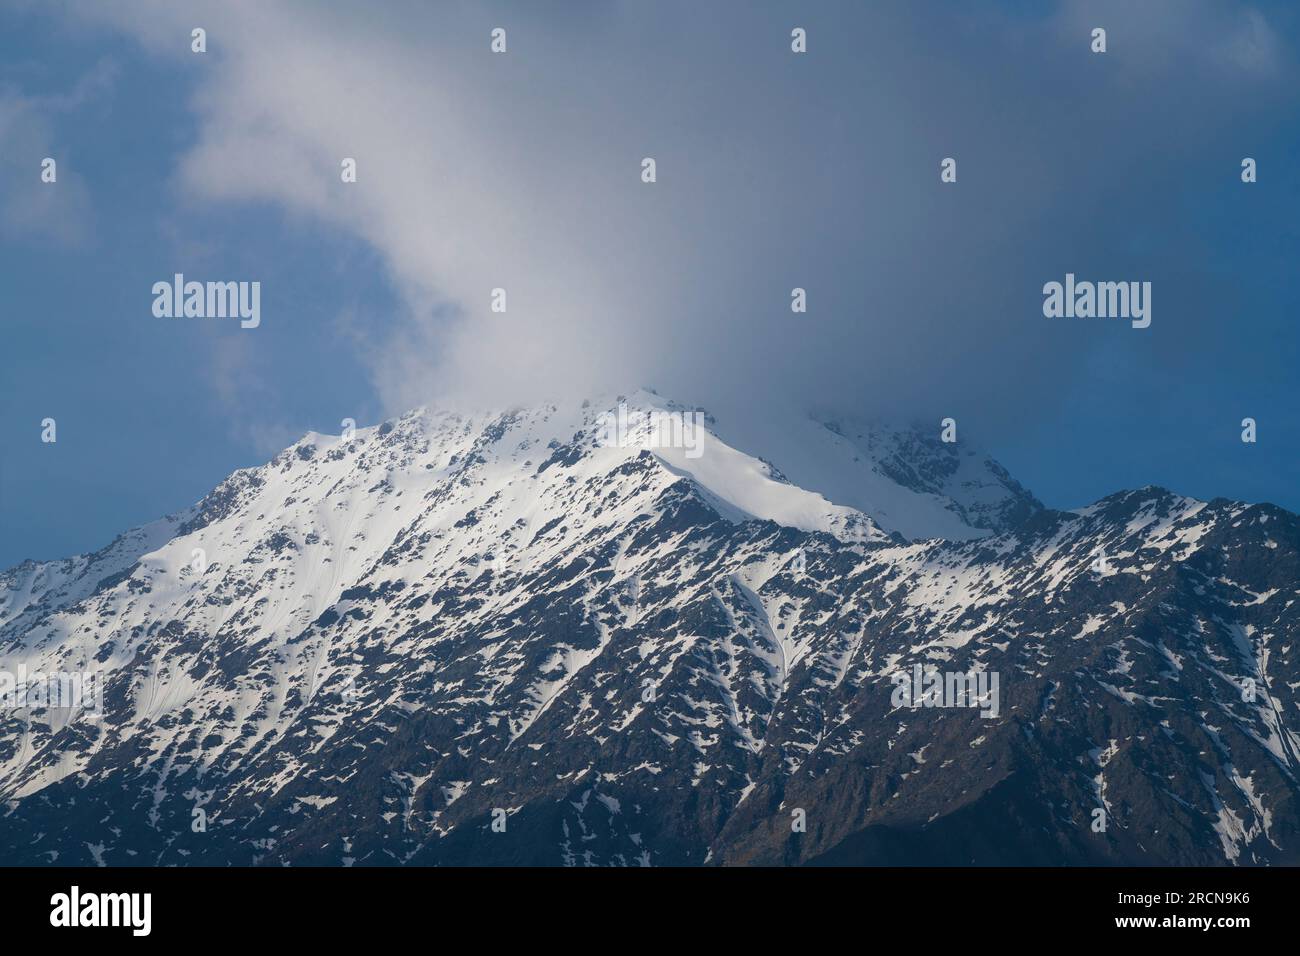 Montagne couverte de neige avec pic caché par un nuage. Caucase du Nord, Russie Banque D'Images